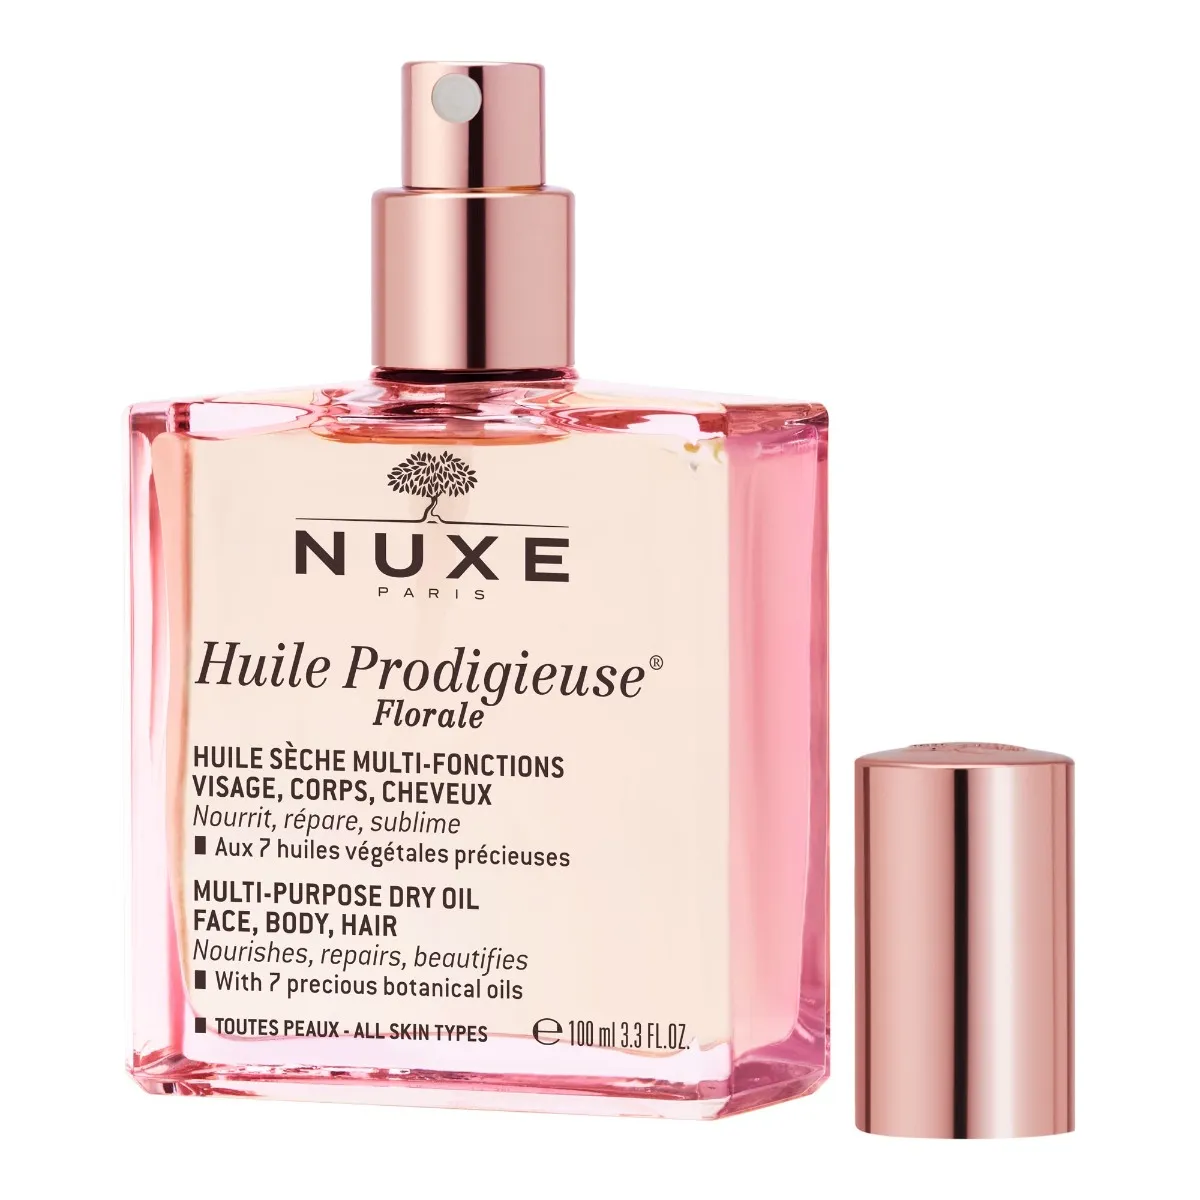 Nuxe Huile Prodigieuse Florale Suchy olejek do ciała, twarzy i włosów, 100 ml 